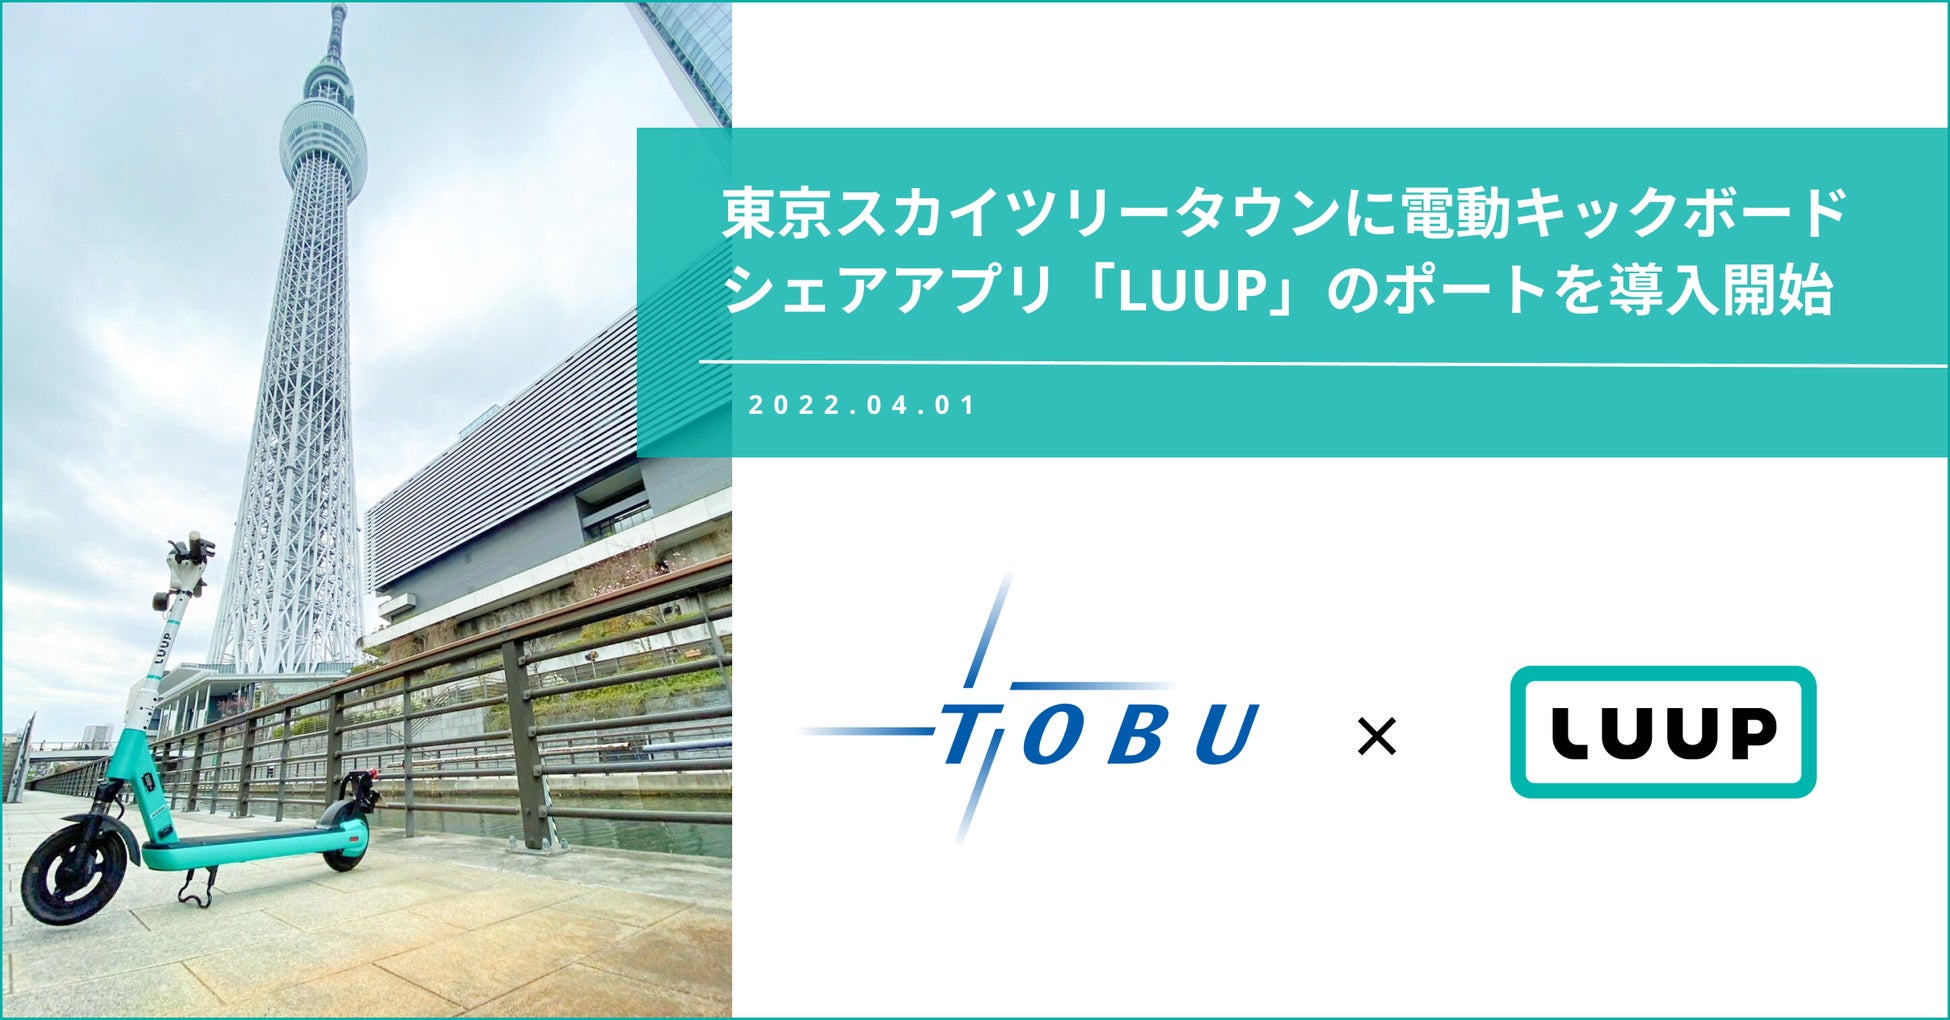 LUUP、東京スカイツリータウンにてポートの拡大